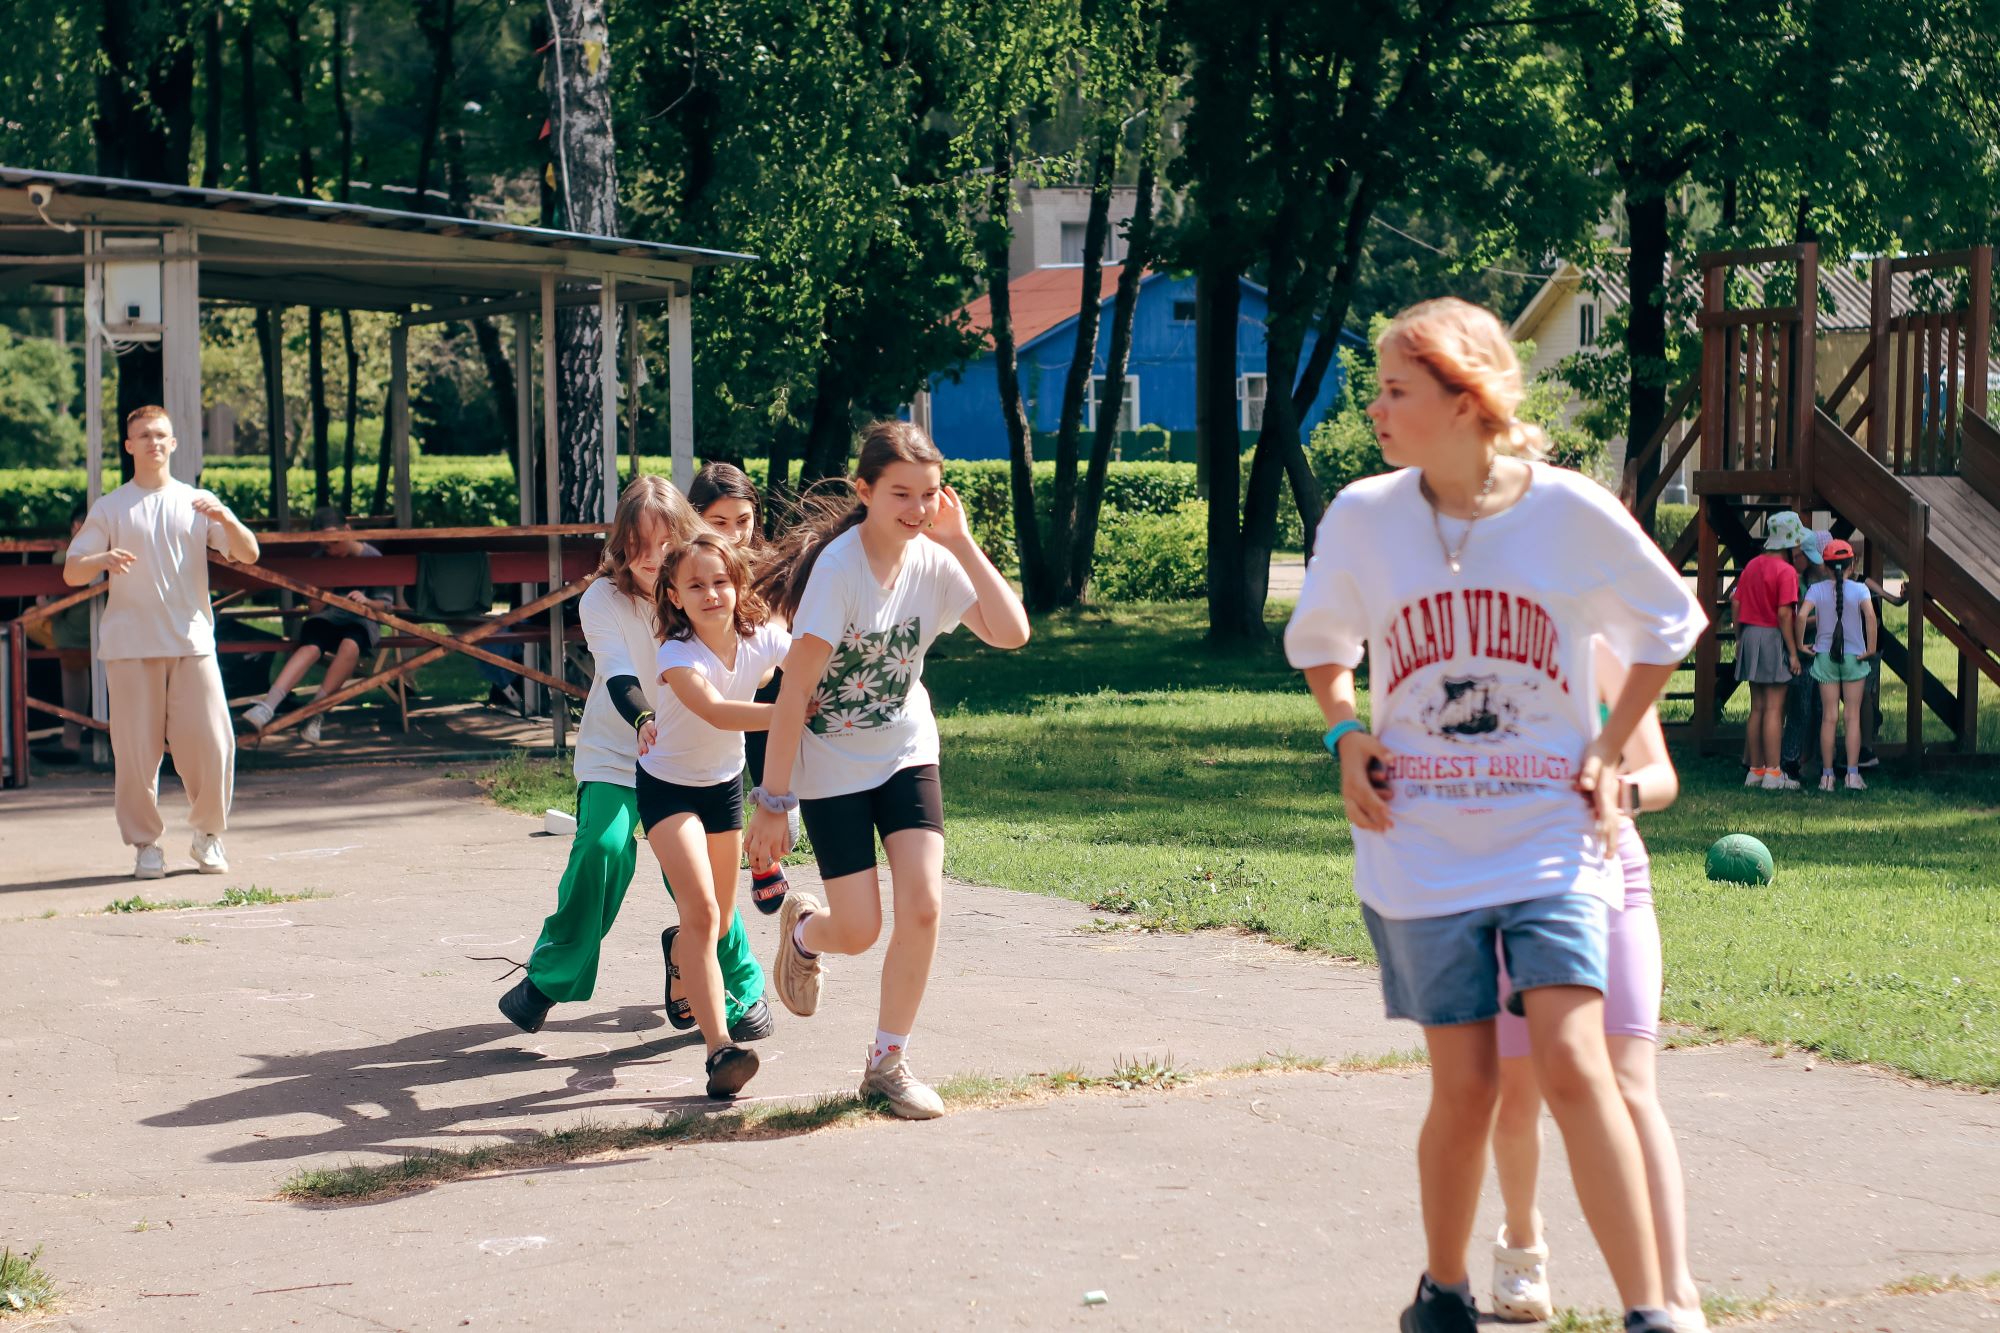 VIL Camp Время новых открытий – спортивный лагерь, Московская область, Ногинский район. Путевки в детский лагерь на 2024 год, фото программы 2